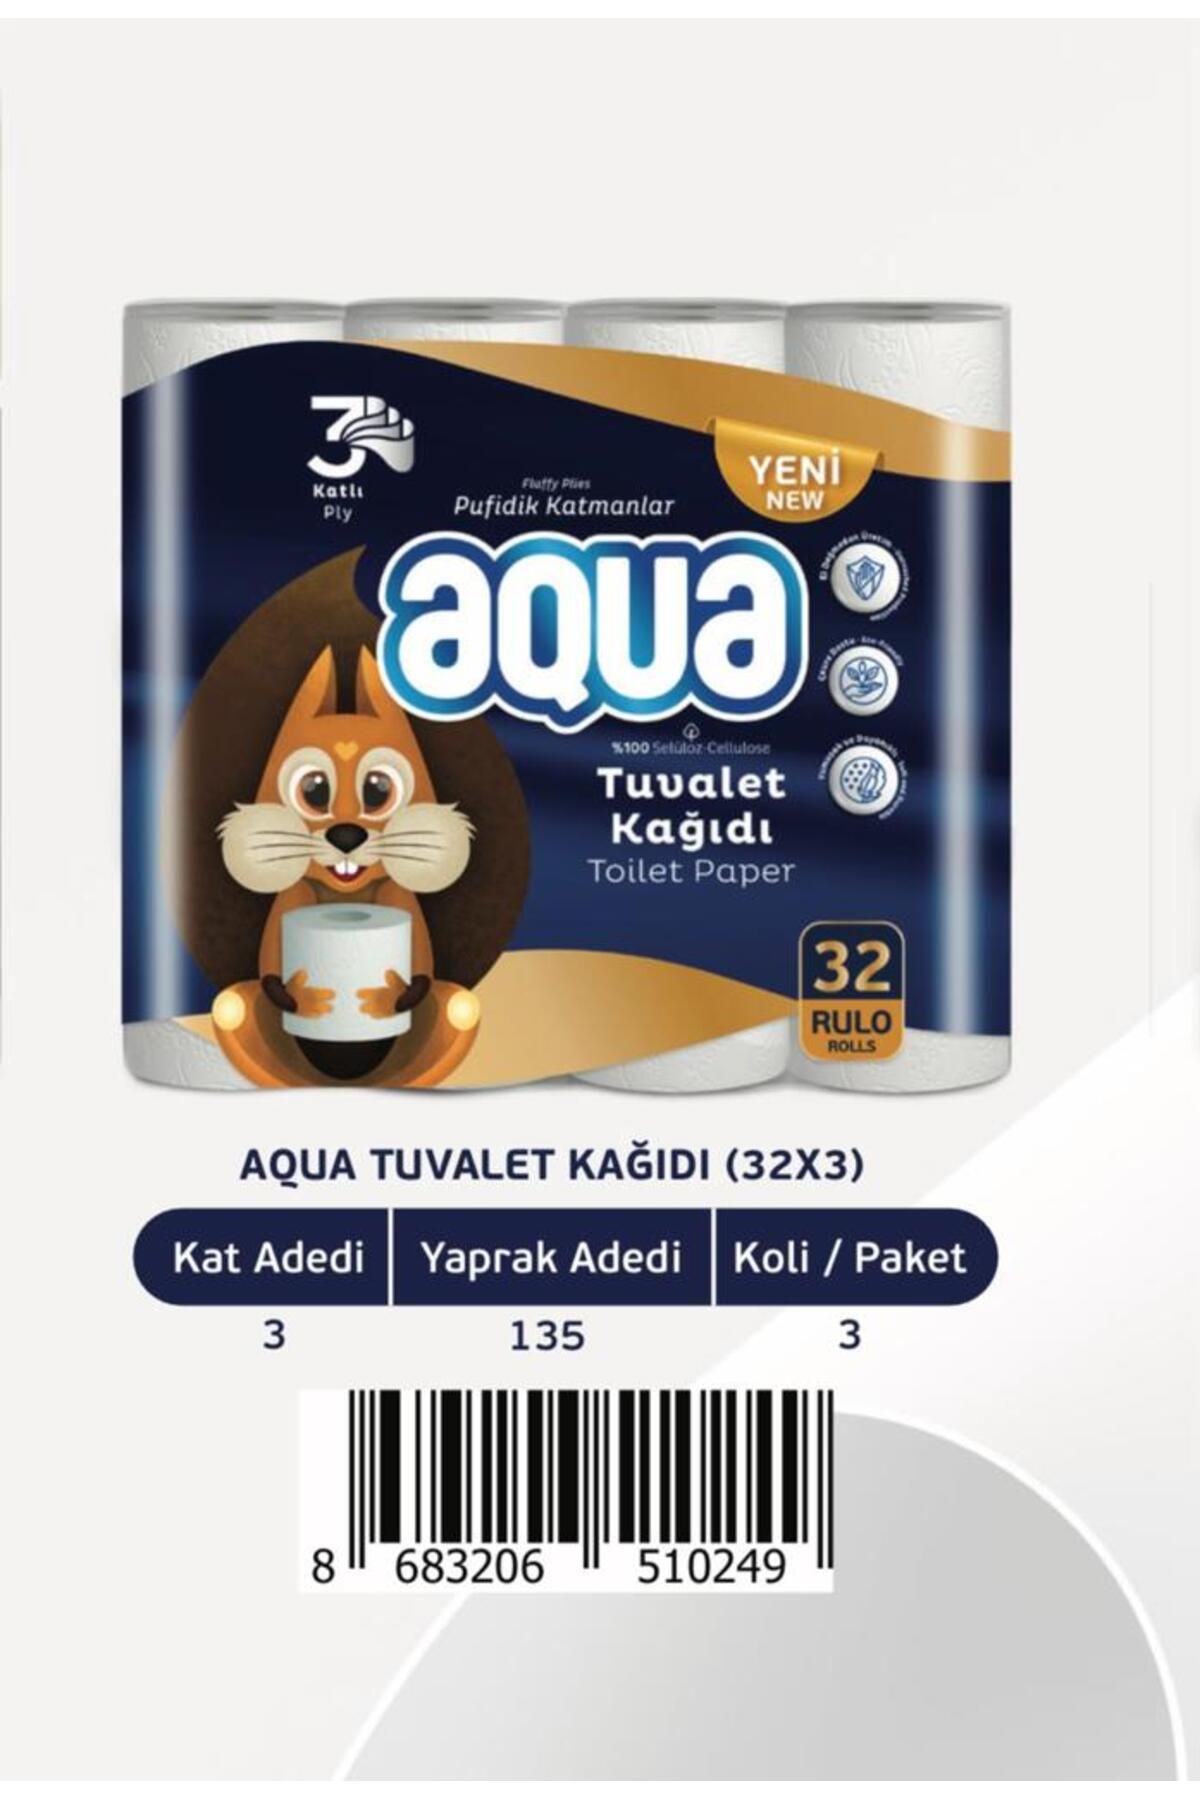 Aqua Tuvalet Kağıdı 32'li 3 Katlı